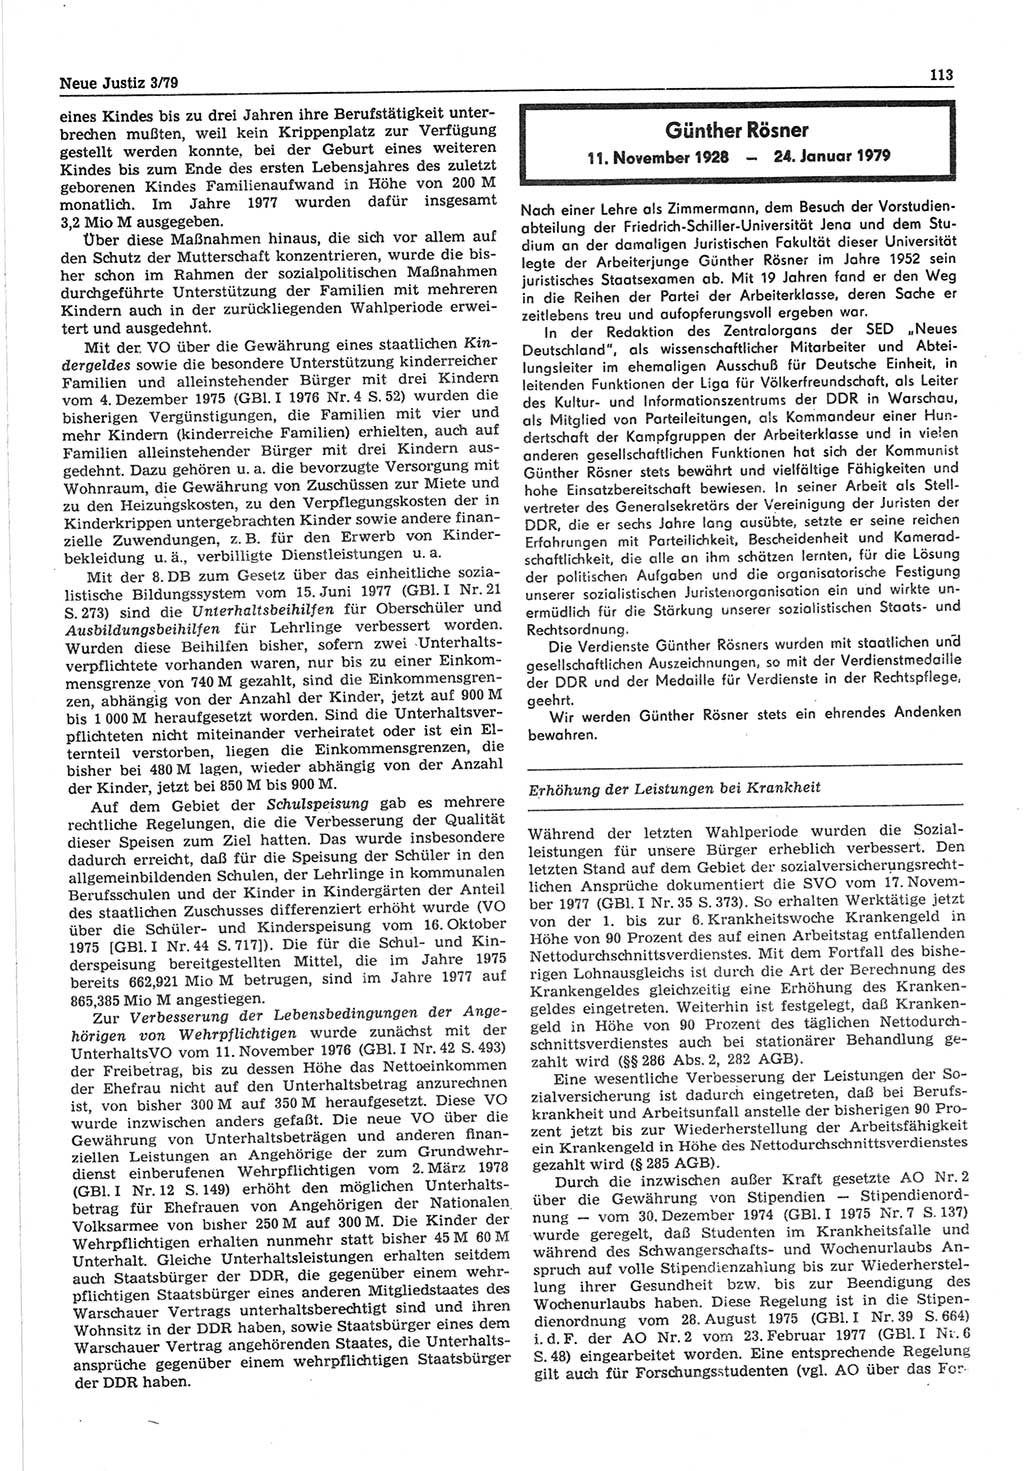 Neue Justiz (NJ), Zeitschrift für sozialistisches Recht und Gesetzlichkeit [Deutsche Demokratische Republik (DDR)], 33. Jahrgang 1979, Seite 113 (NJ DDR 1979, S. 113)